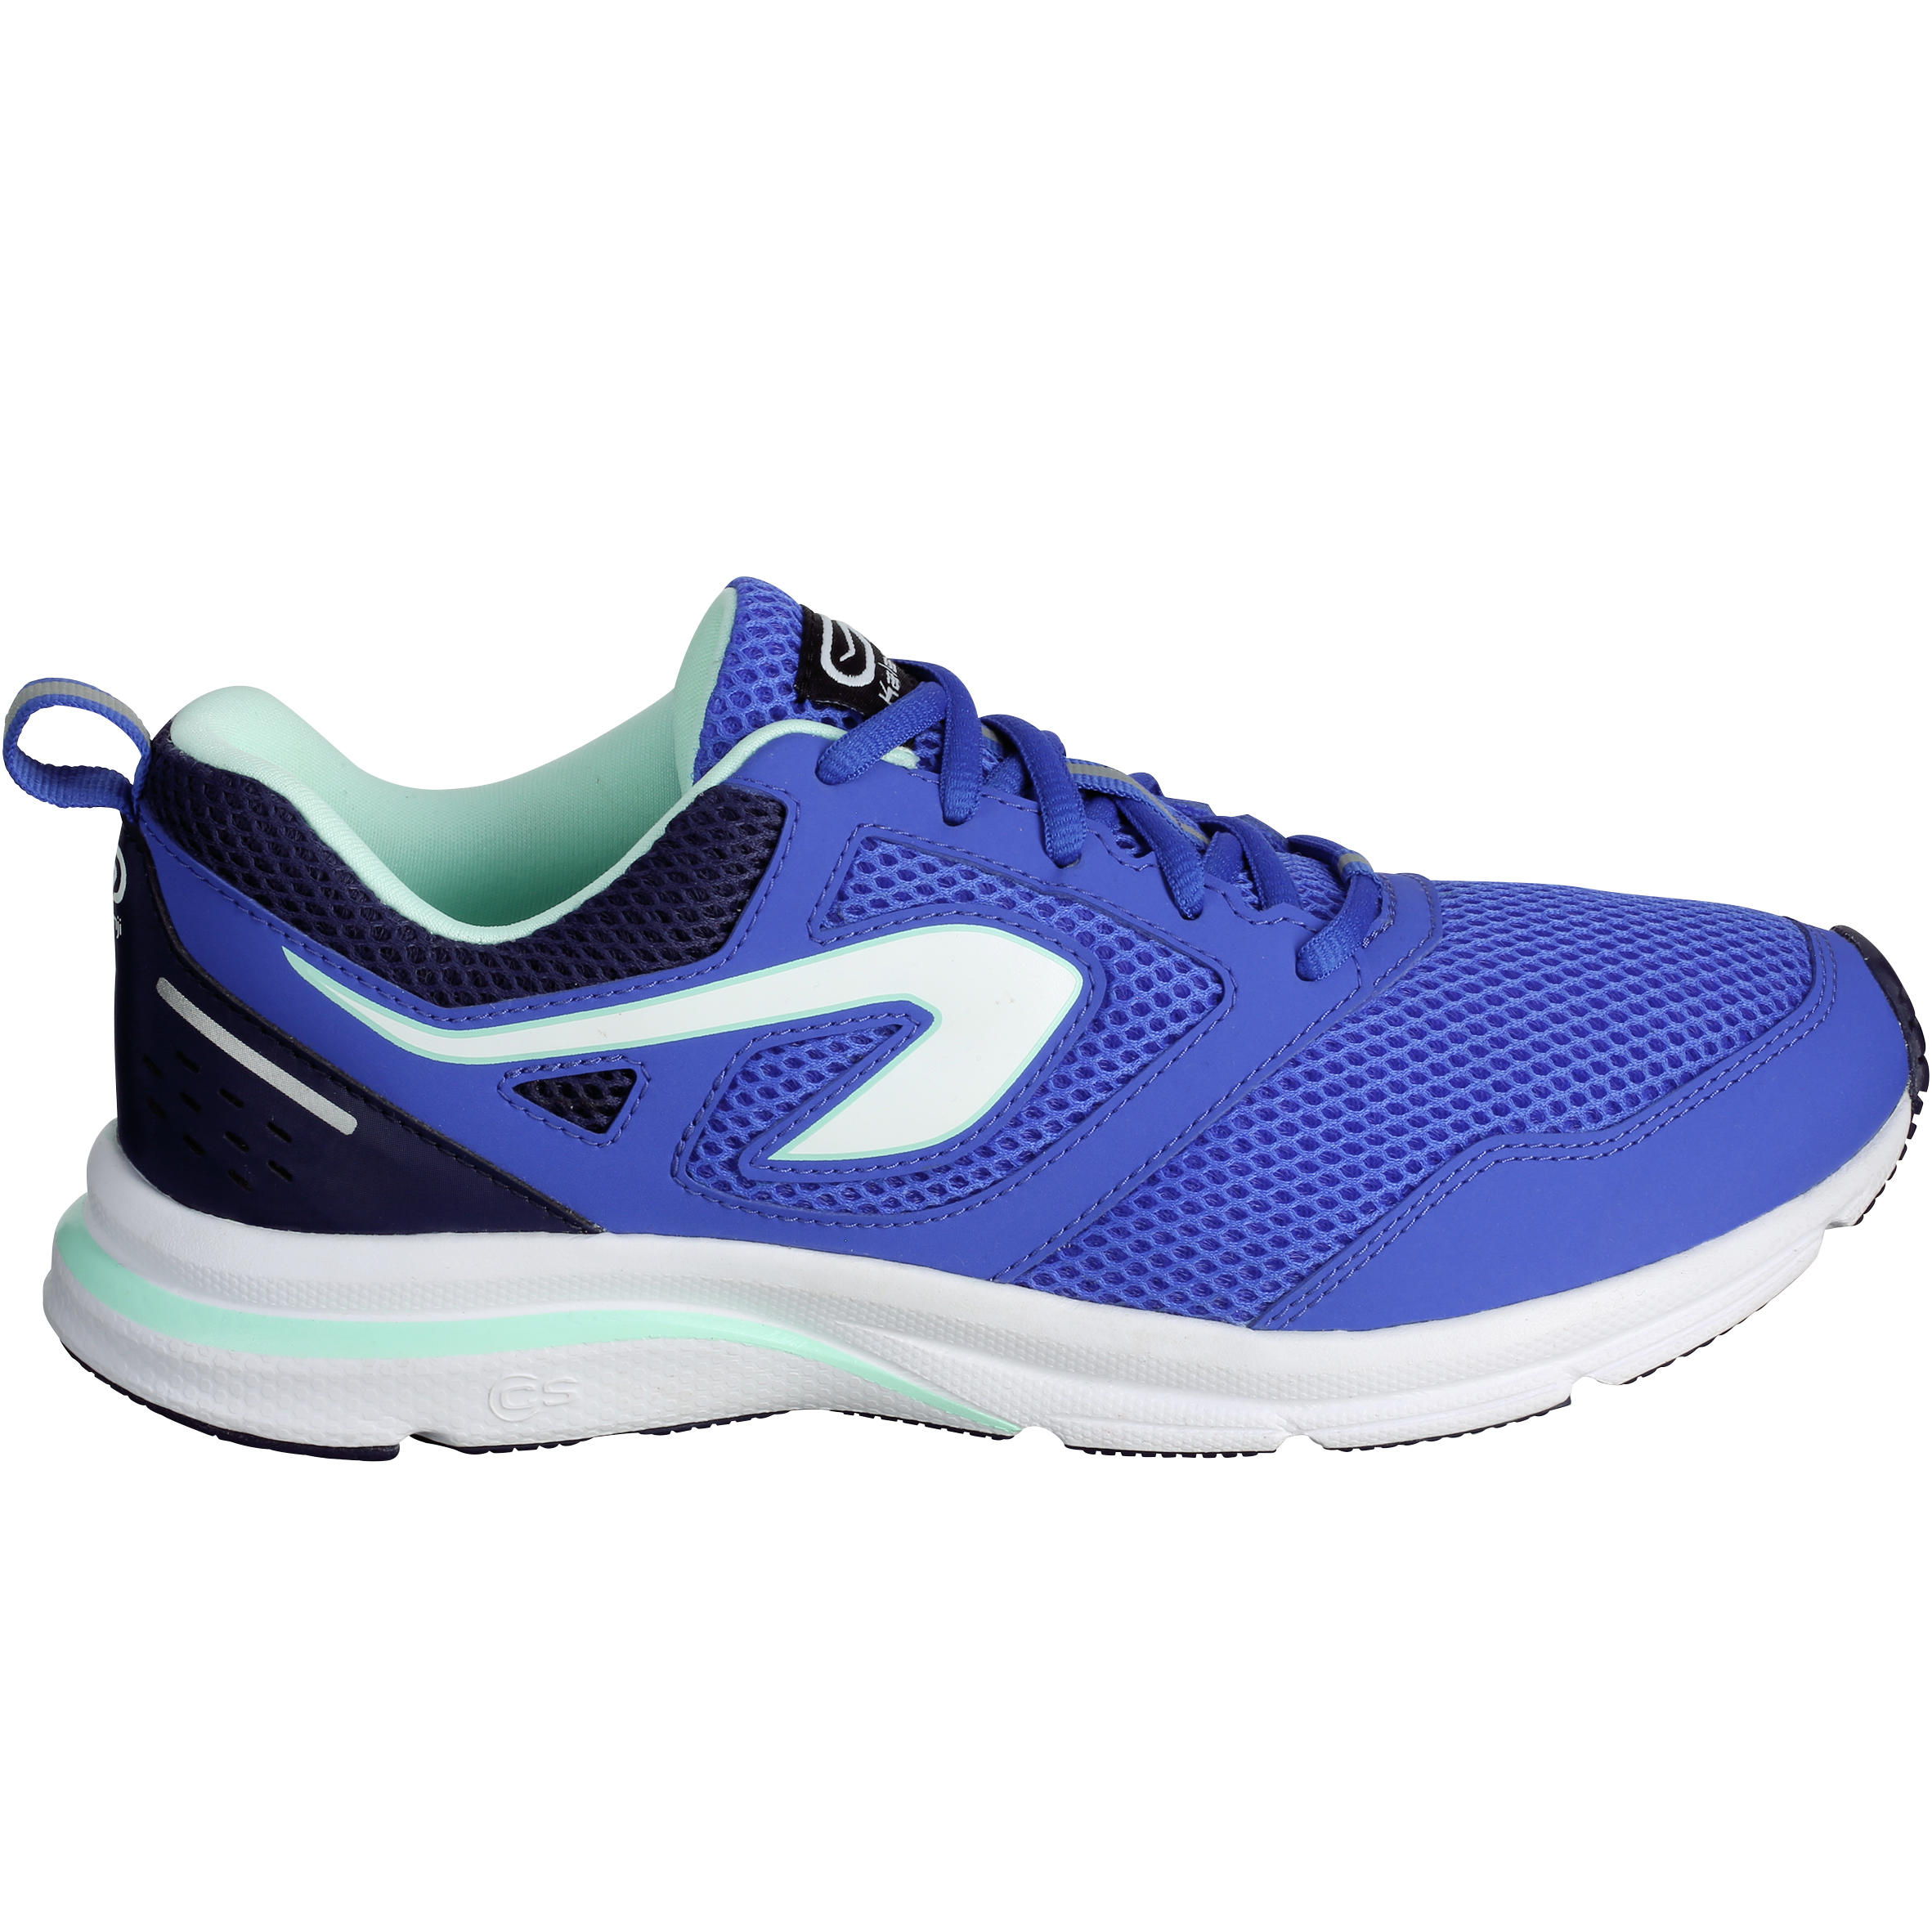 Run Active Women's Running Shoes - Blue 2/6